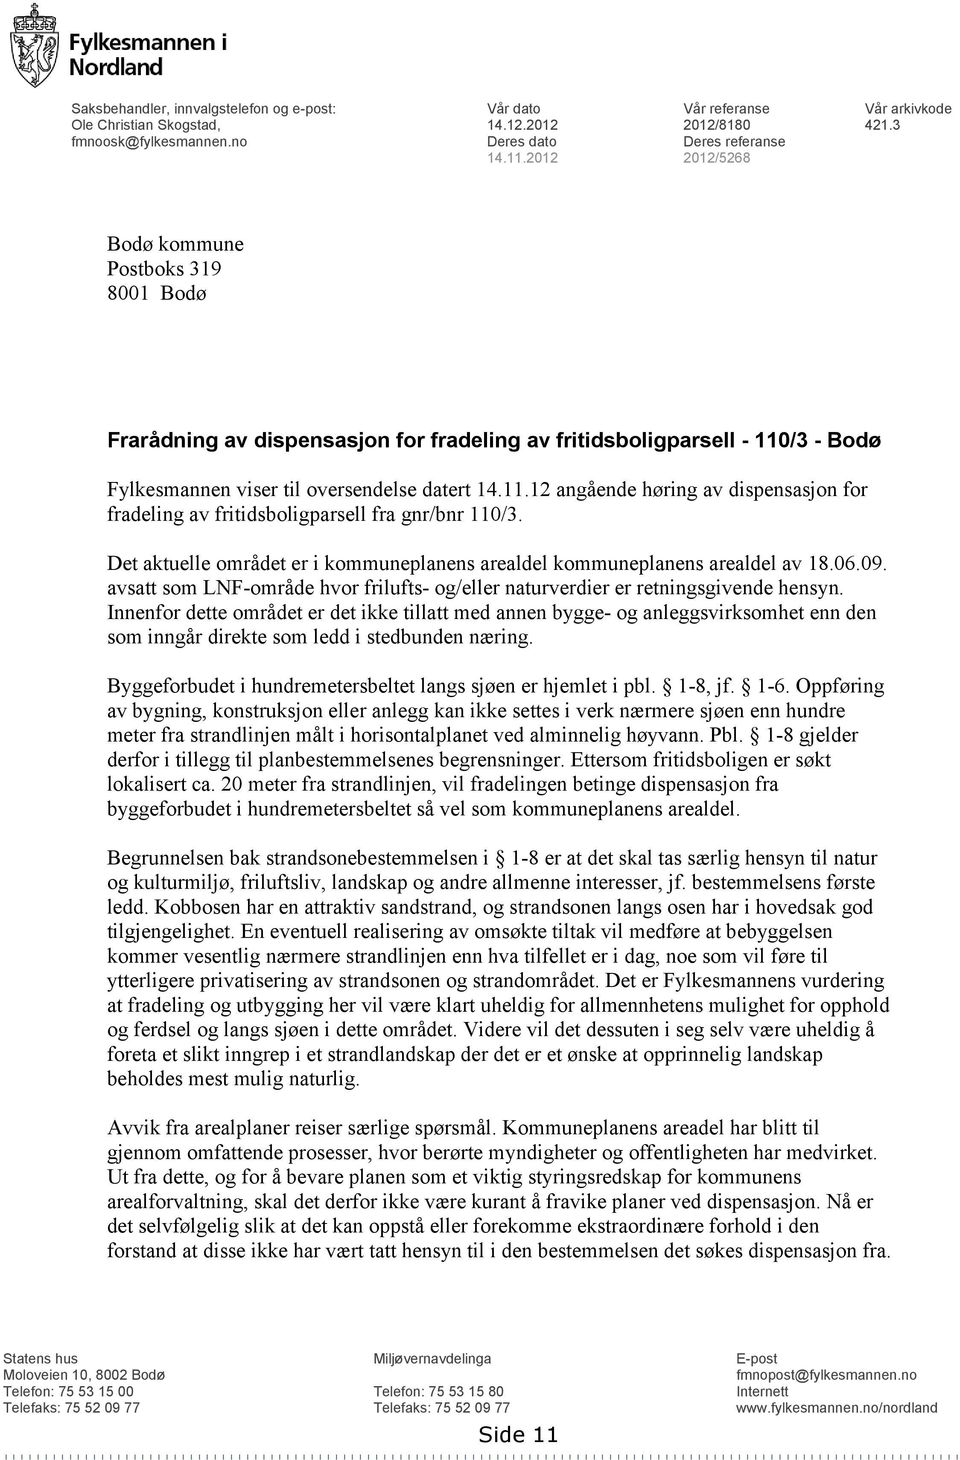 /3 - Bodø Fylkesmannen viser til oversendelse datert 14.11.12 angående høring av dispensasjon for fradeling av fritidsboligparsell fra gnr/bnr 110/3.